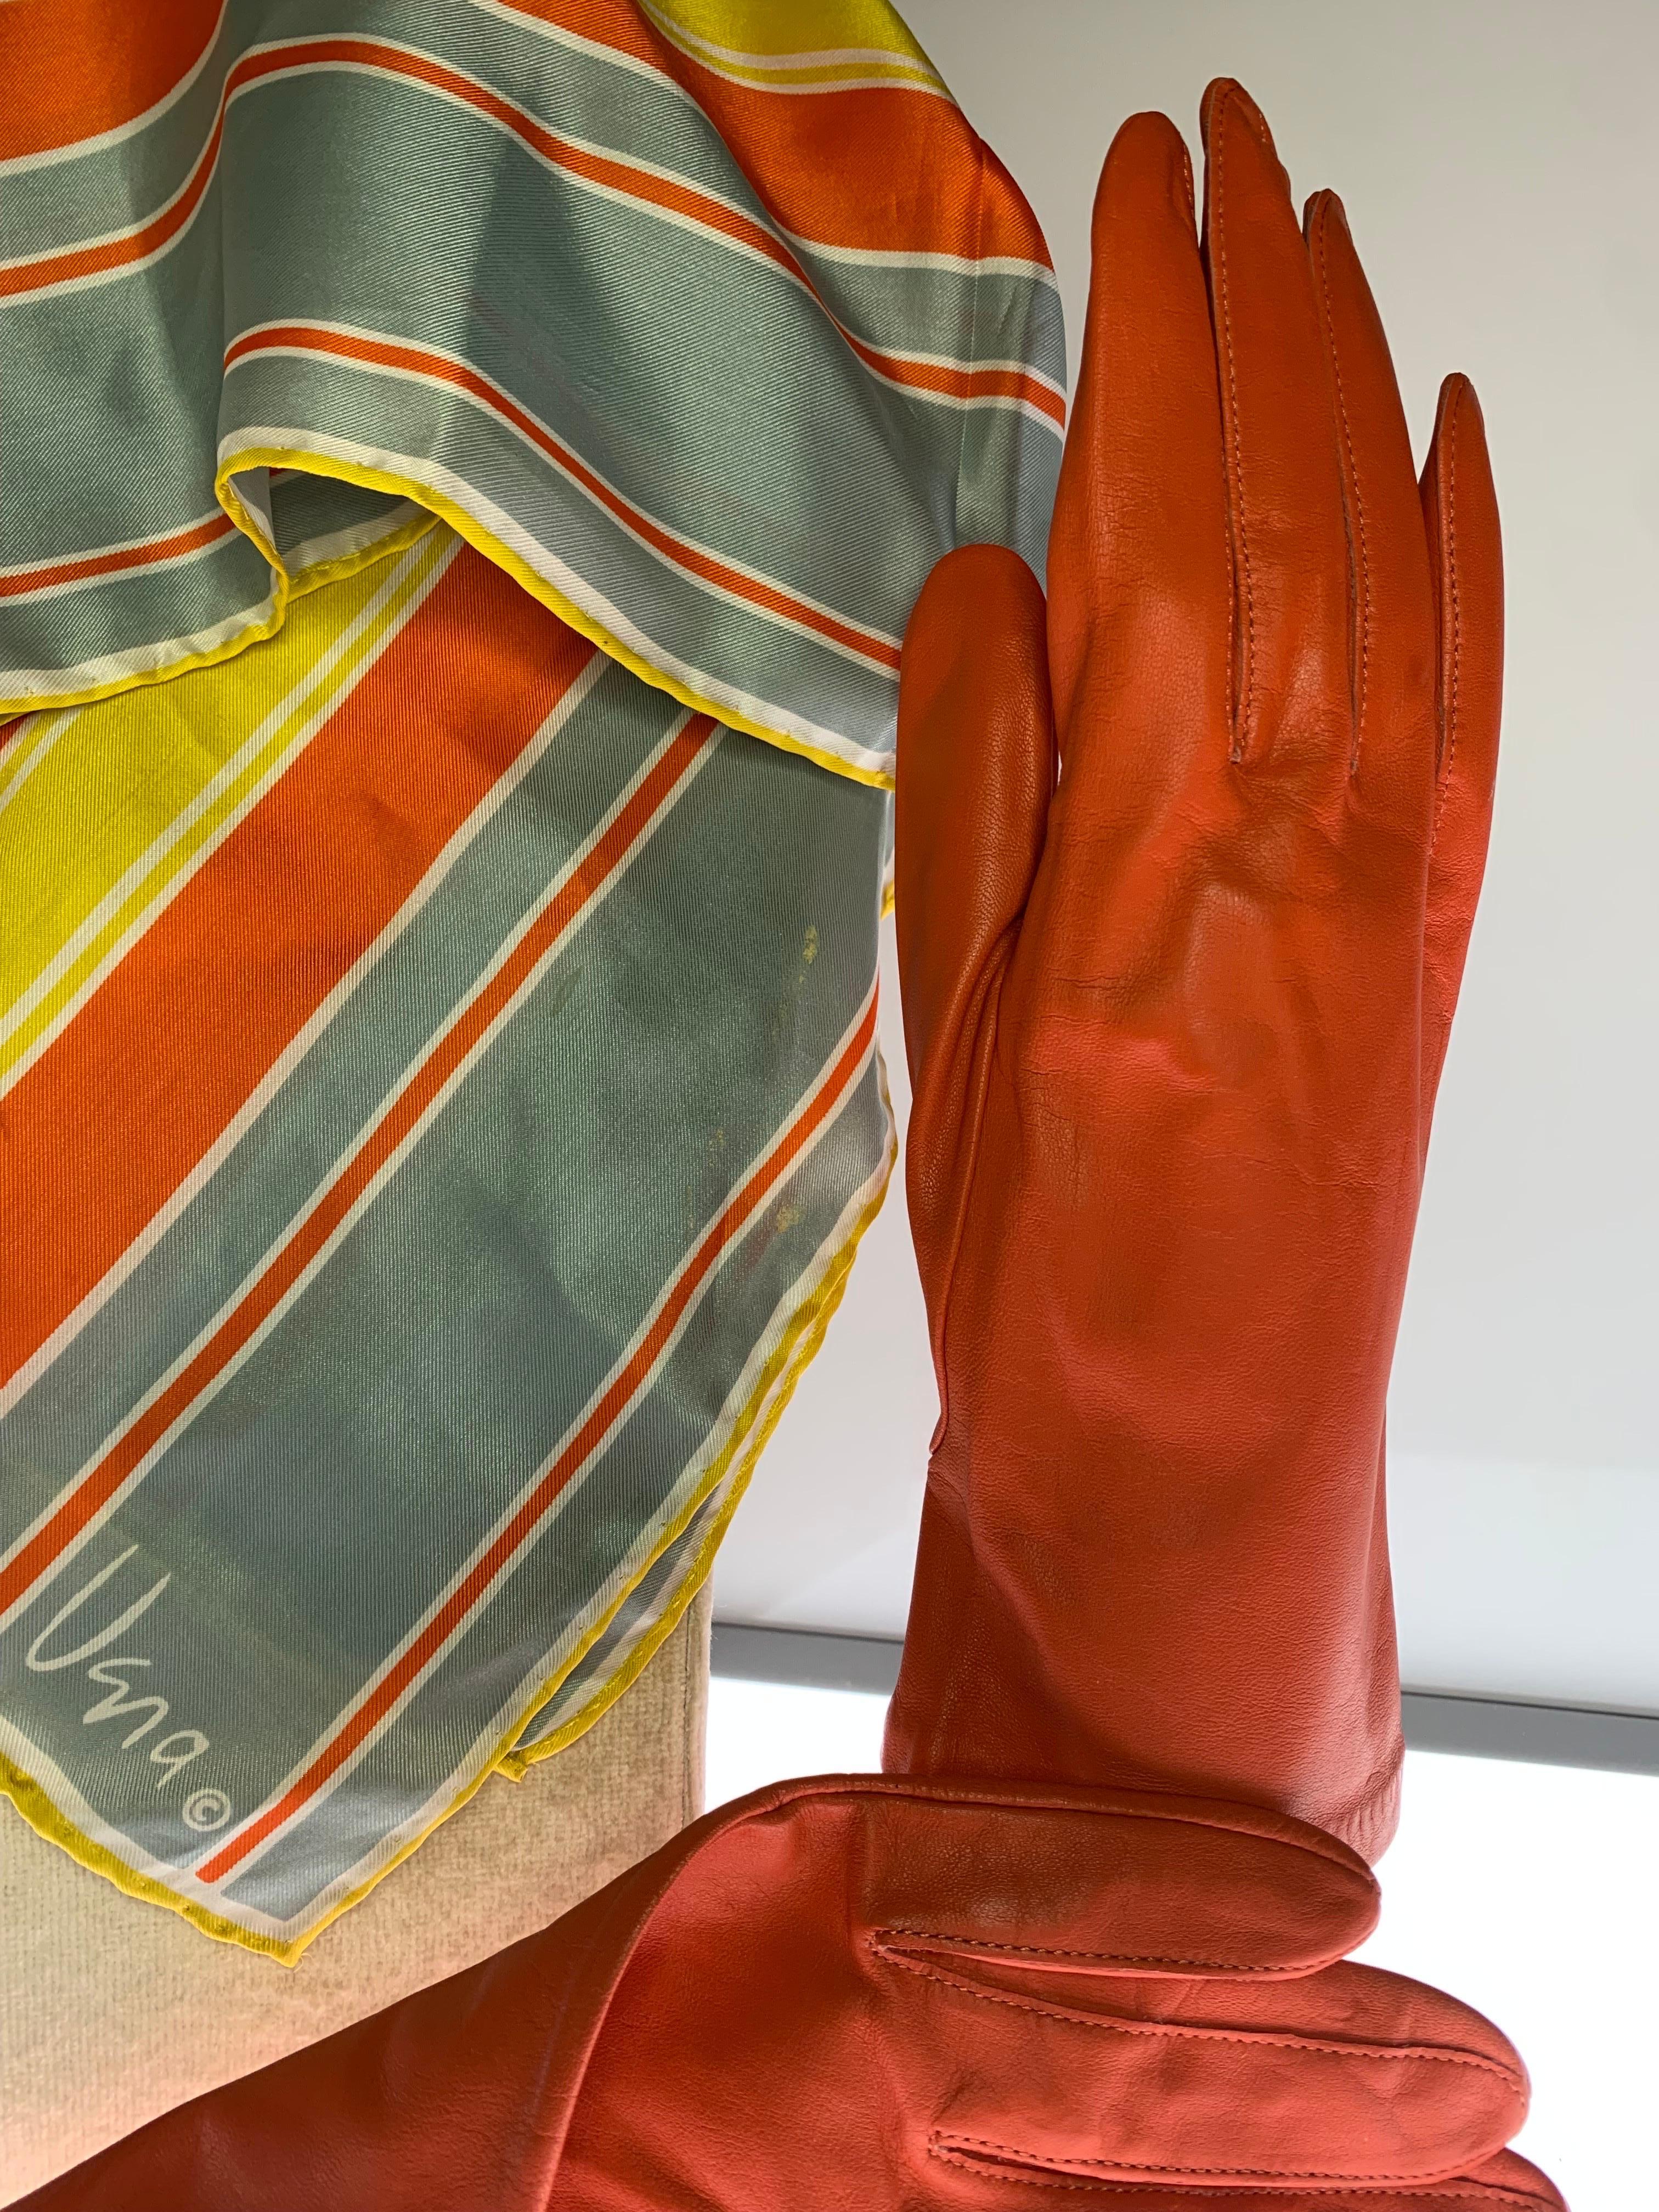 Vintage Orange Lederhandschuhe & koordinierende Grafik Print Vera Seidenschal Set:  1980er Grandoe Ziegenlederhandschuhe, ungefüttert, in Größe 8 und ein orange, gelb und schieferfarben gestreifter Vera-Seidenschal dazu. Wird als Set verkauft. 